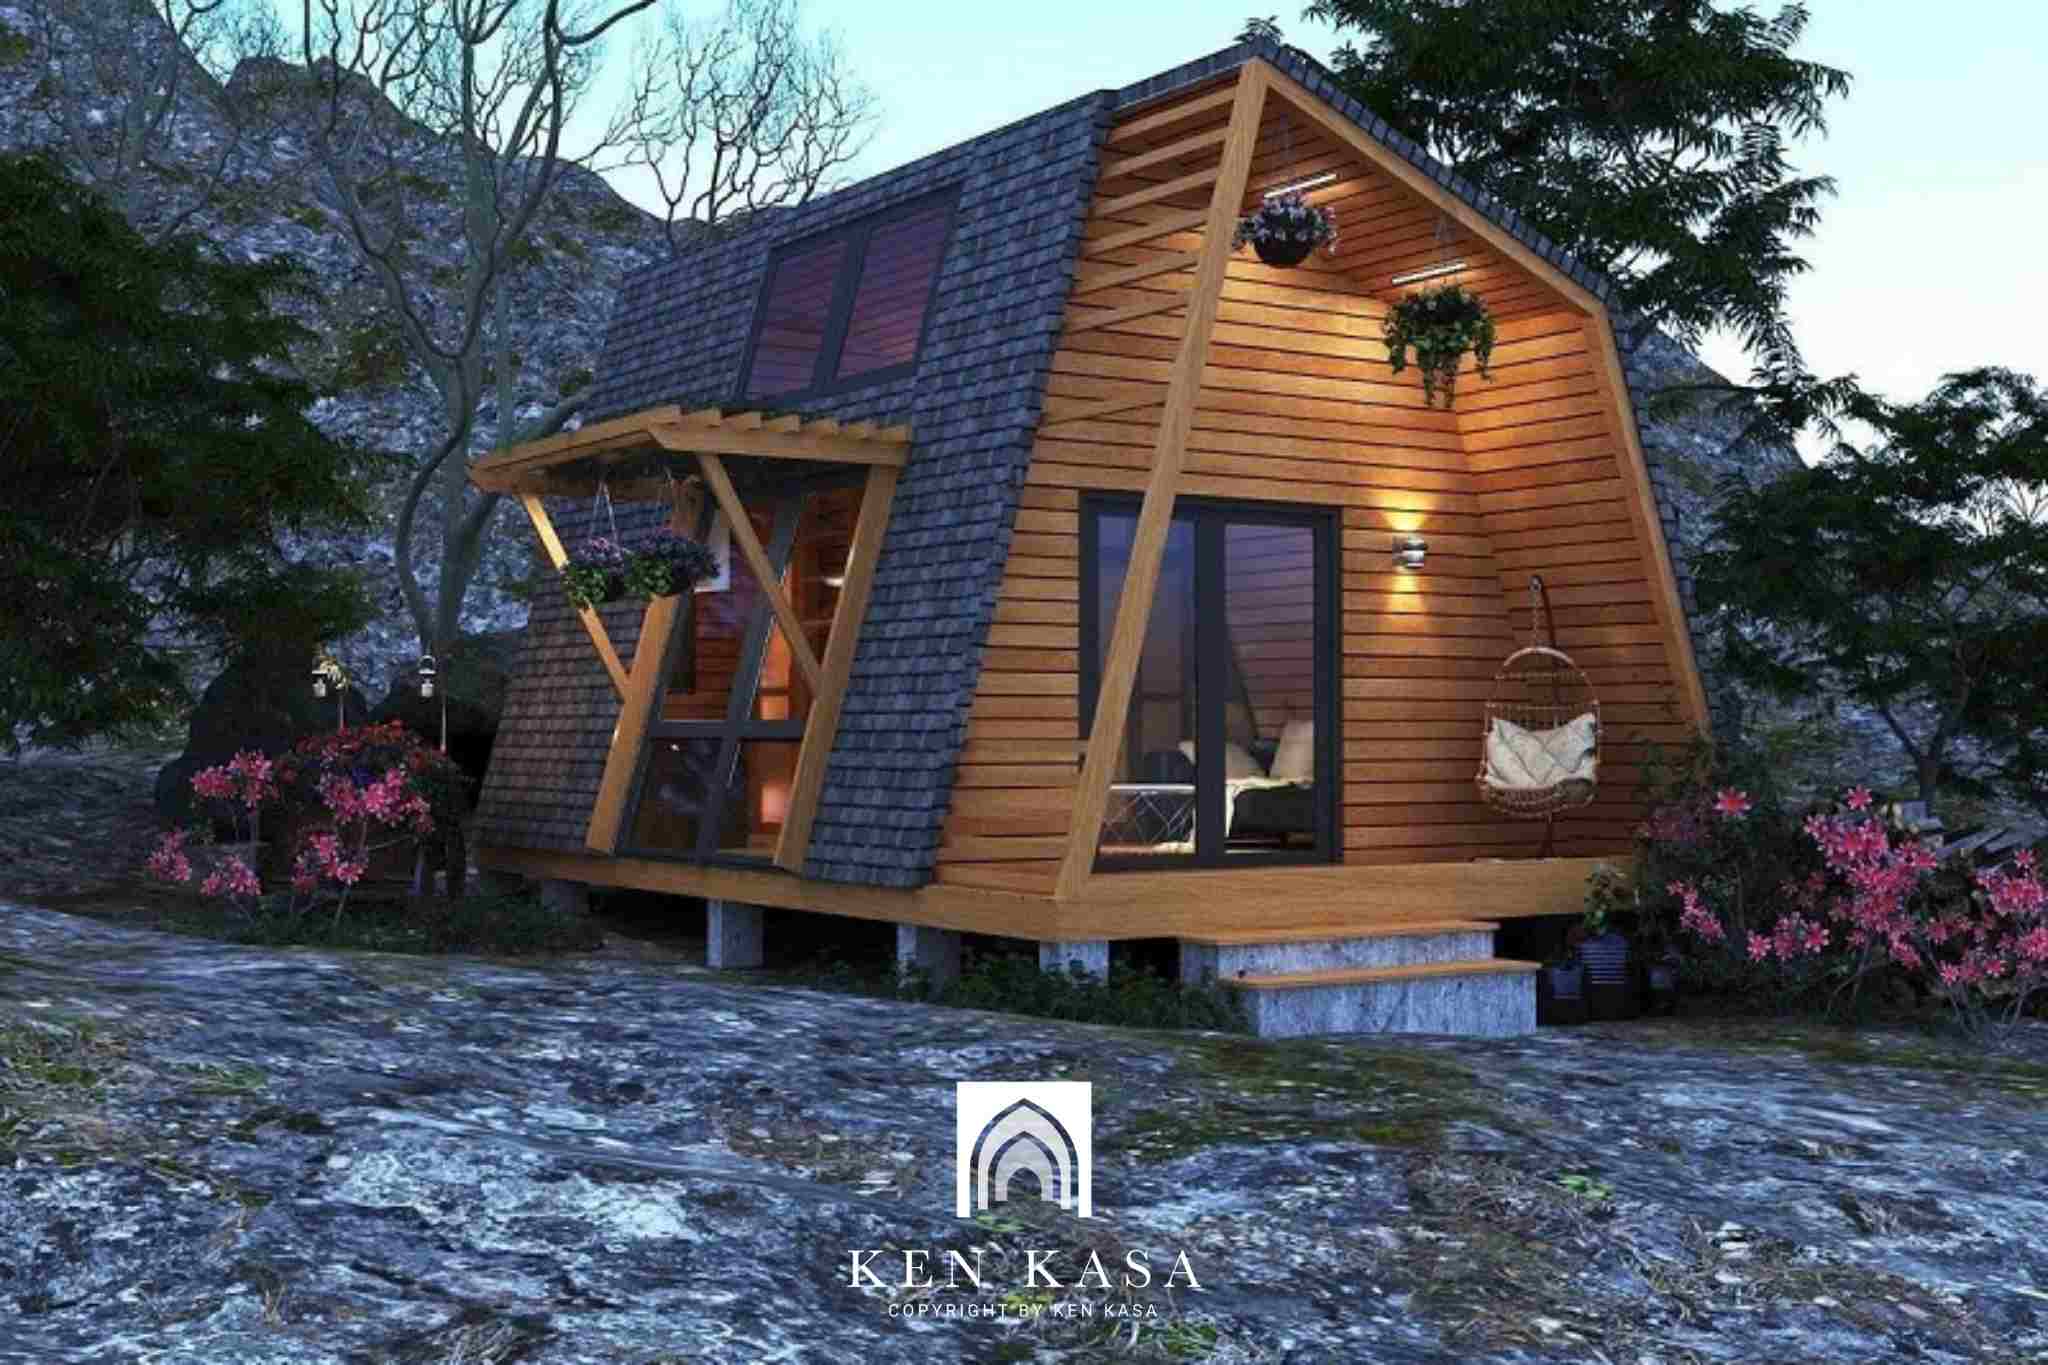 Ý tưởng thiết kế homestay cho diện tích nhỏ kiểu nhà lắp ghép 